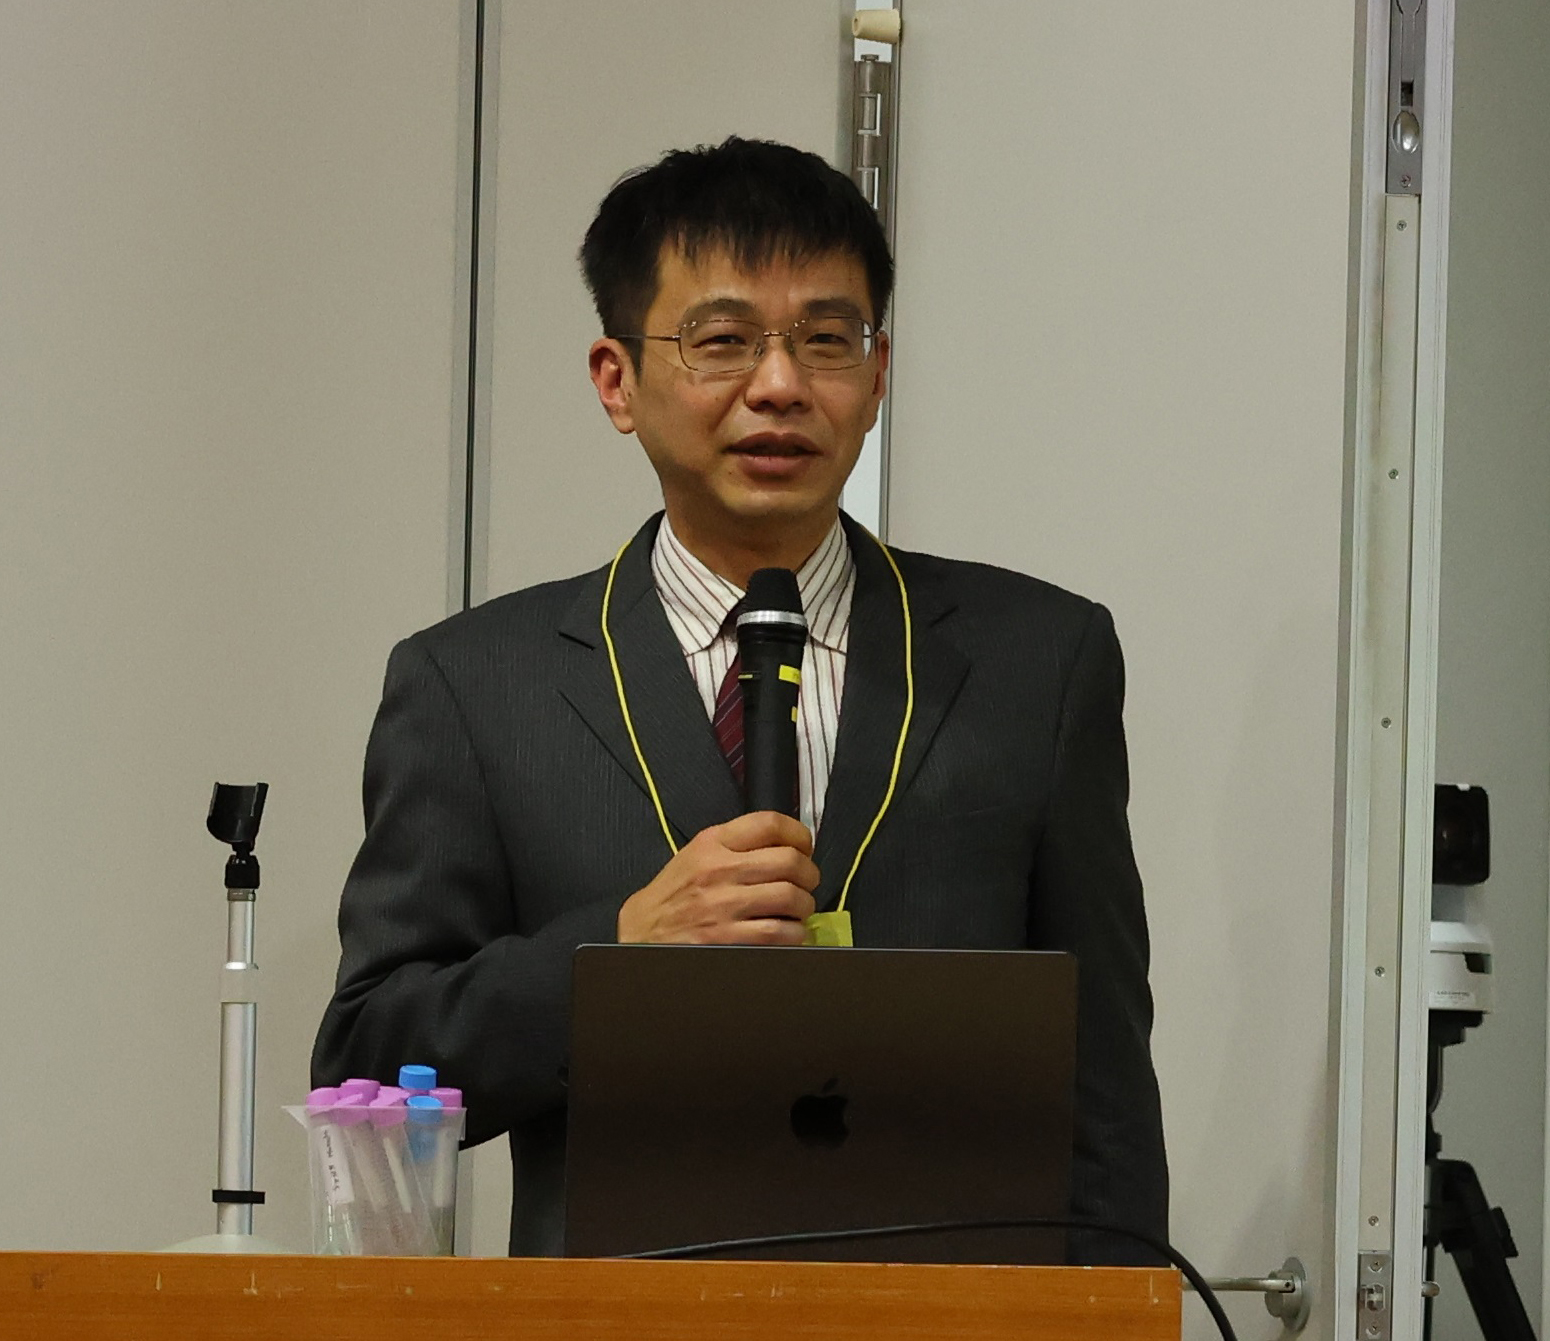 岡山大学 須藤雄気 教授による特別講演「光をくすりへ !? : 光受容タンパク質ロドプシンによる生命機能制御とその応用」